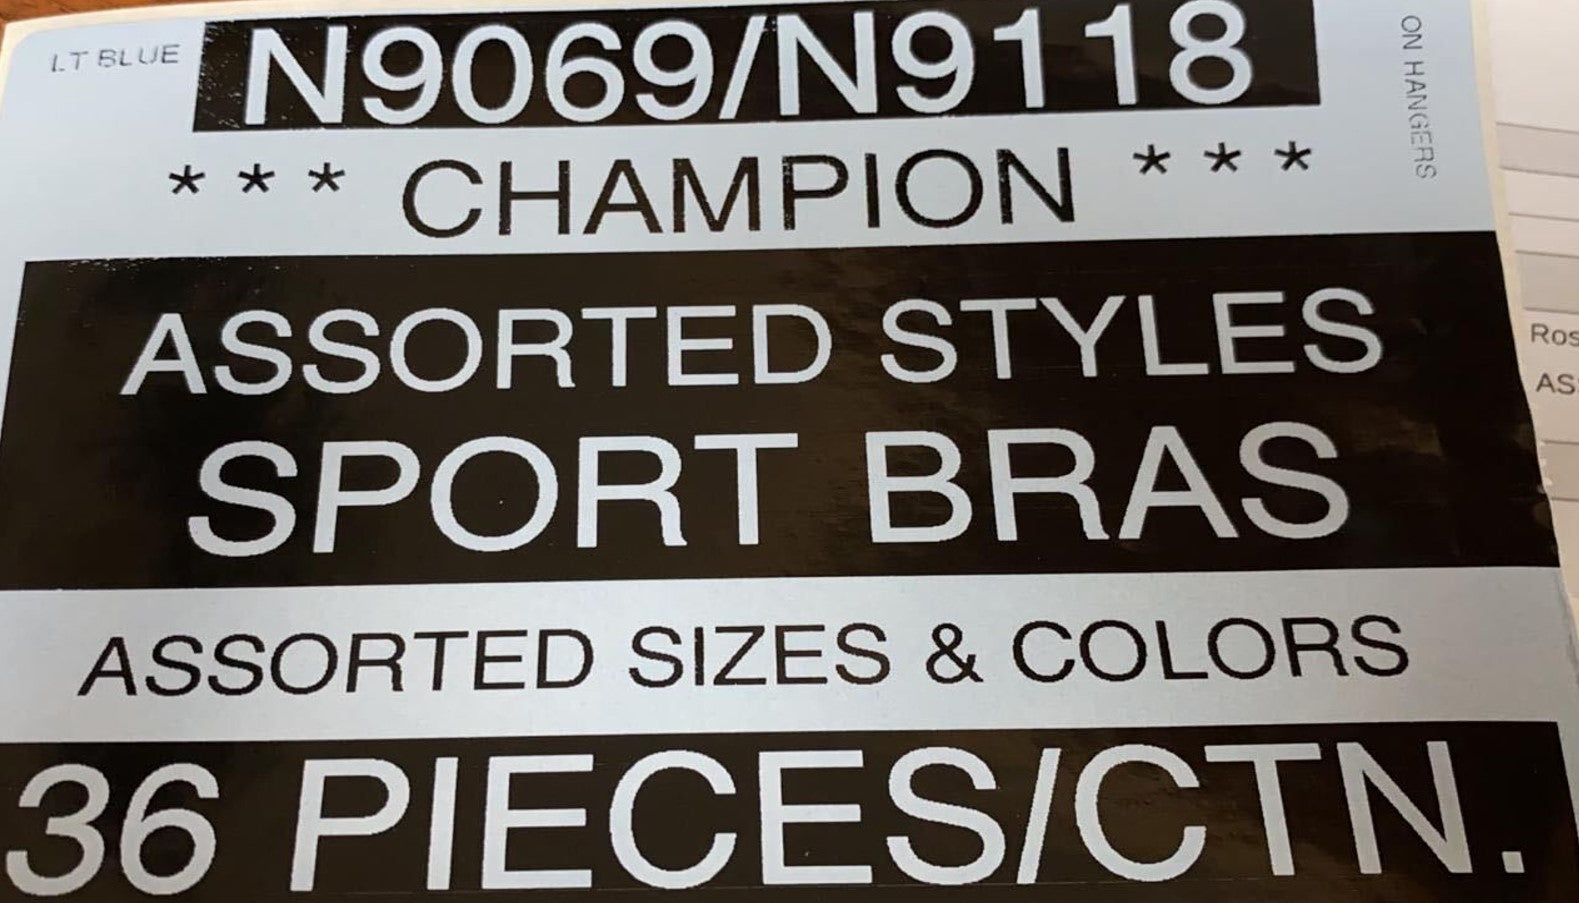 CHAMPION LADIES BRAS STYLE N9069/N9118 – Atlantic Wholesale